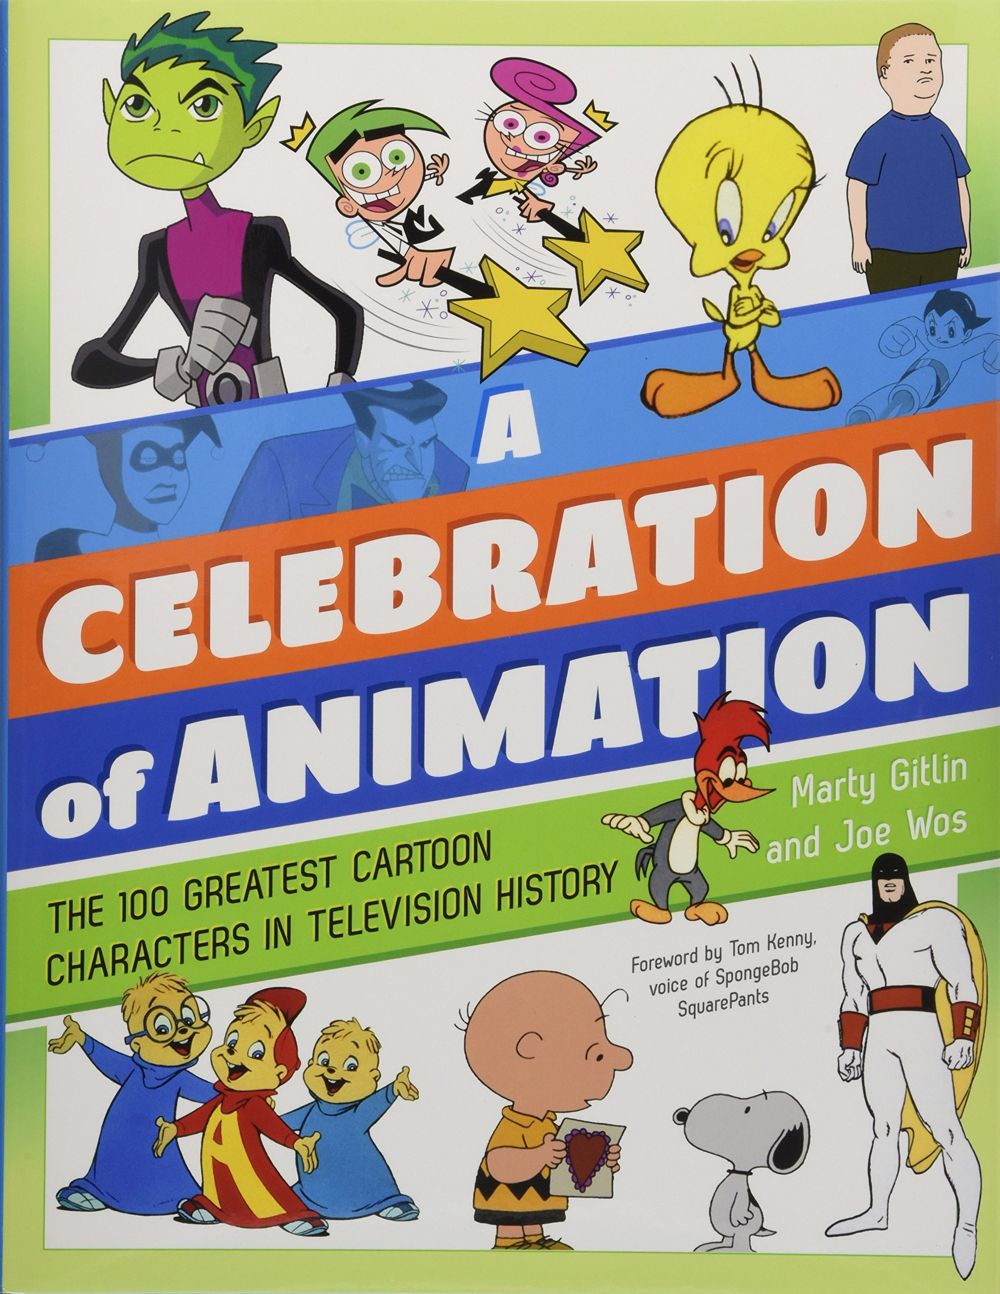 Celebration of Animation